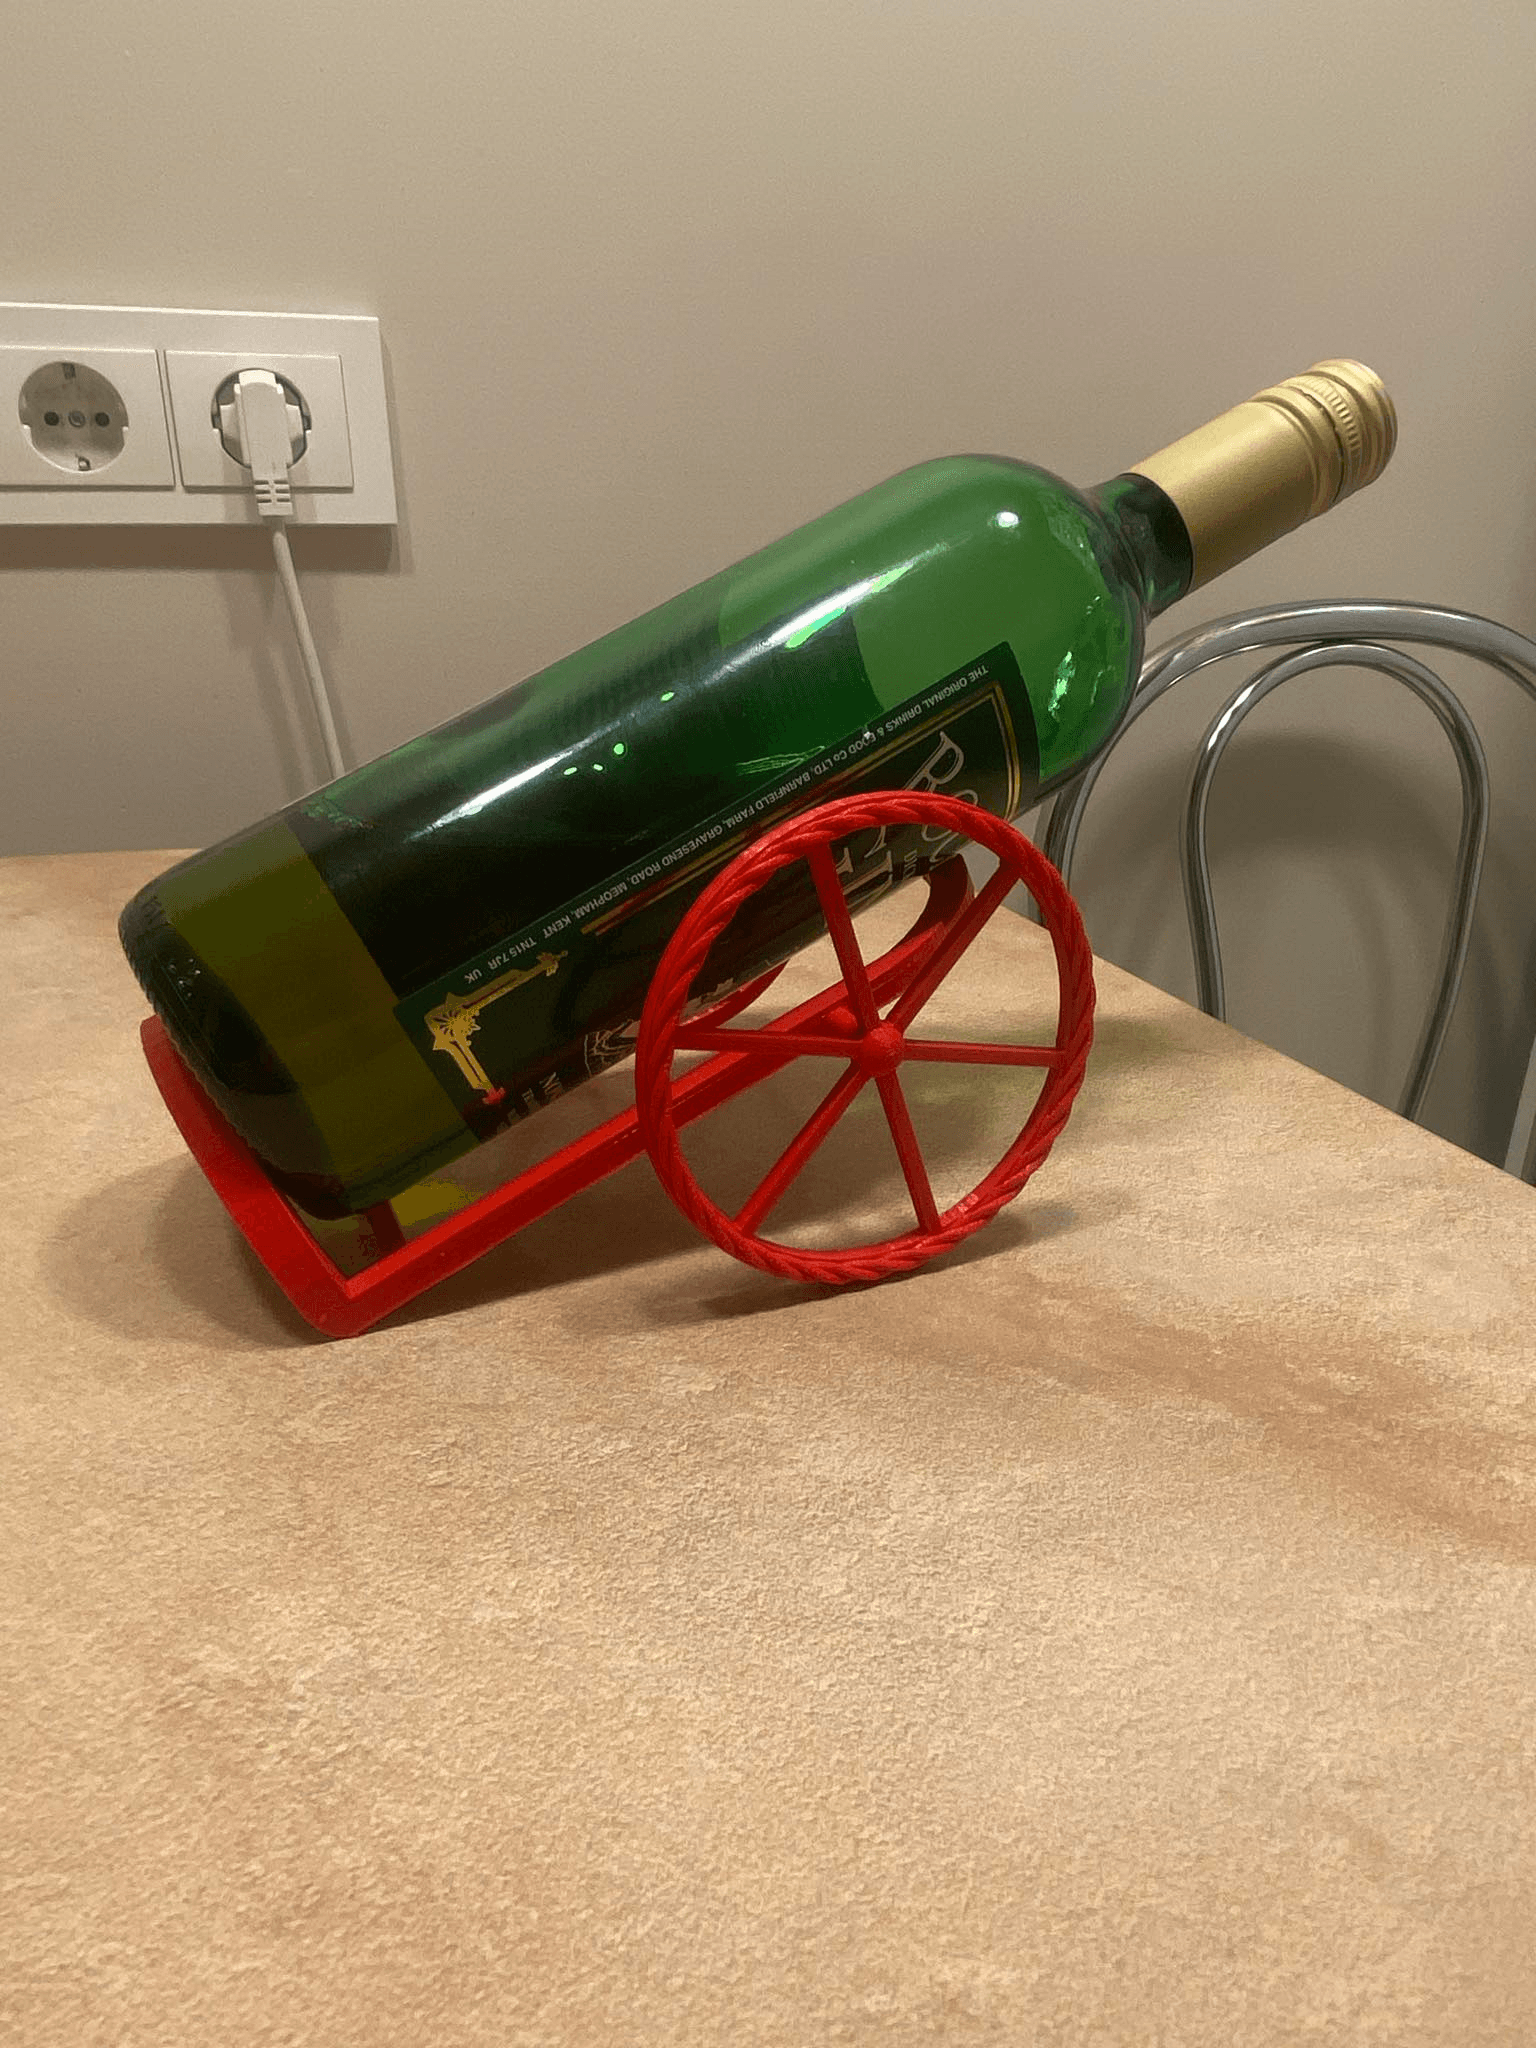 Cannon design wine bottle holder 3d model